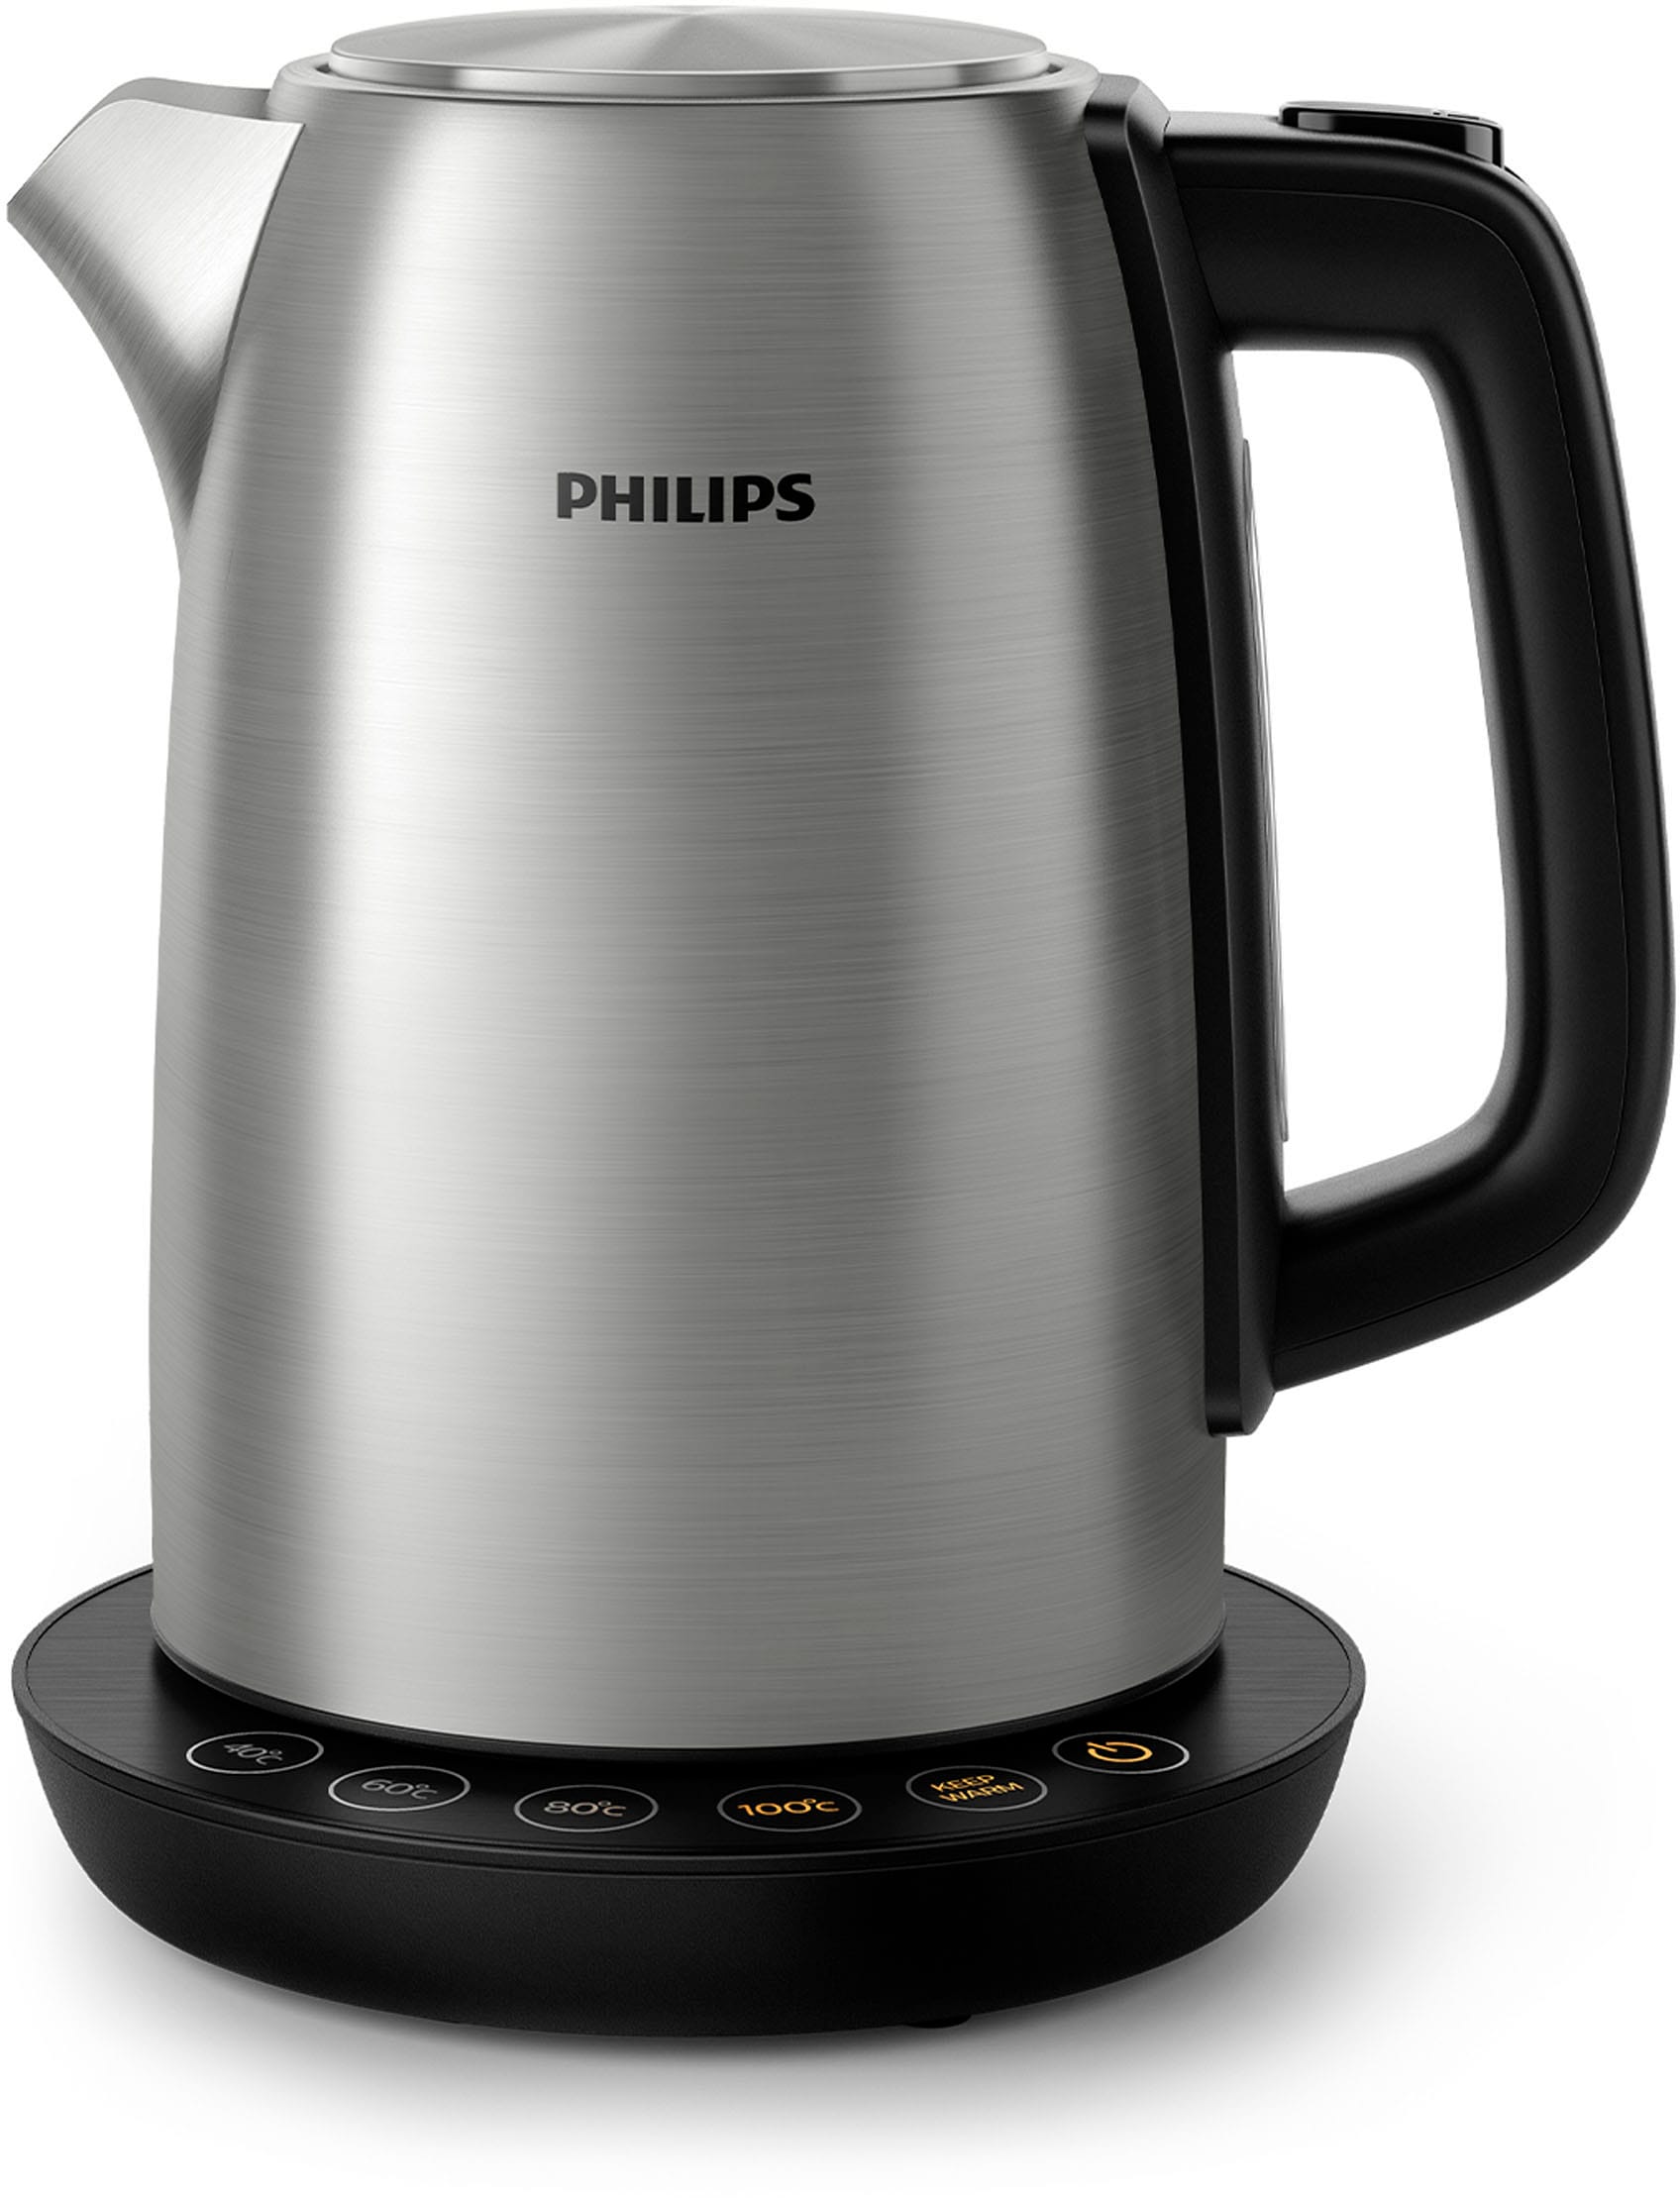 Philips Wasserkocher, HD9359/90, 1,7 Liter, 2200 Watt auf Raten kaufen | Wasserkocher